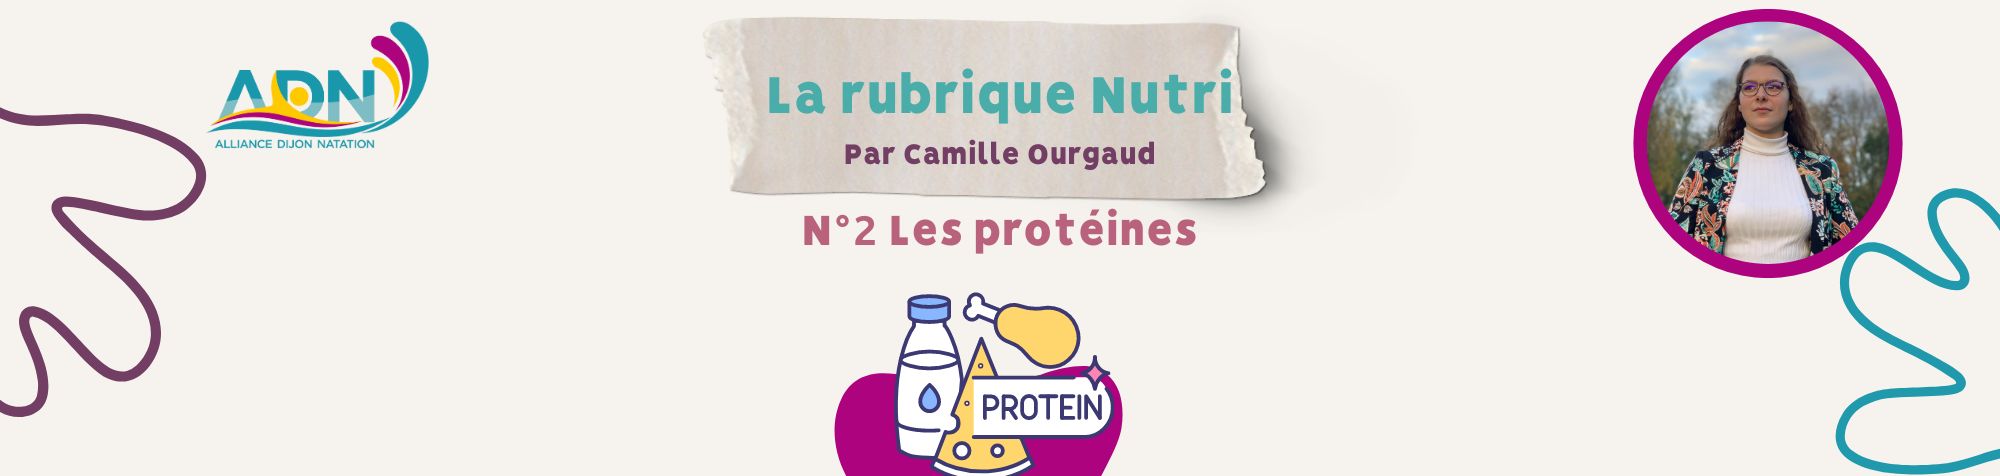 Rubrique nutri site (1)